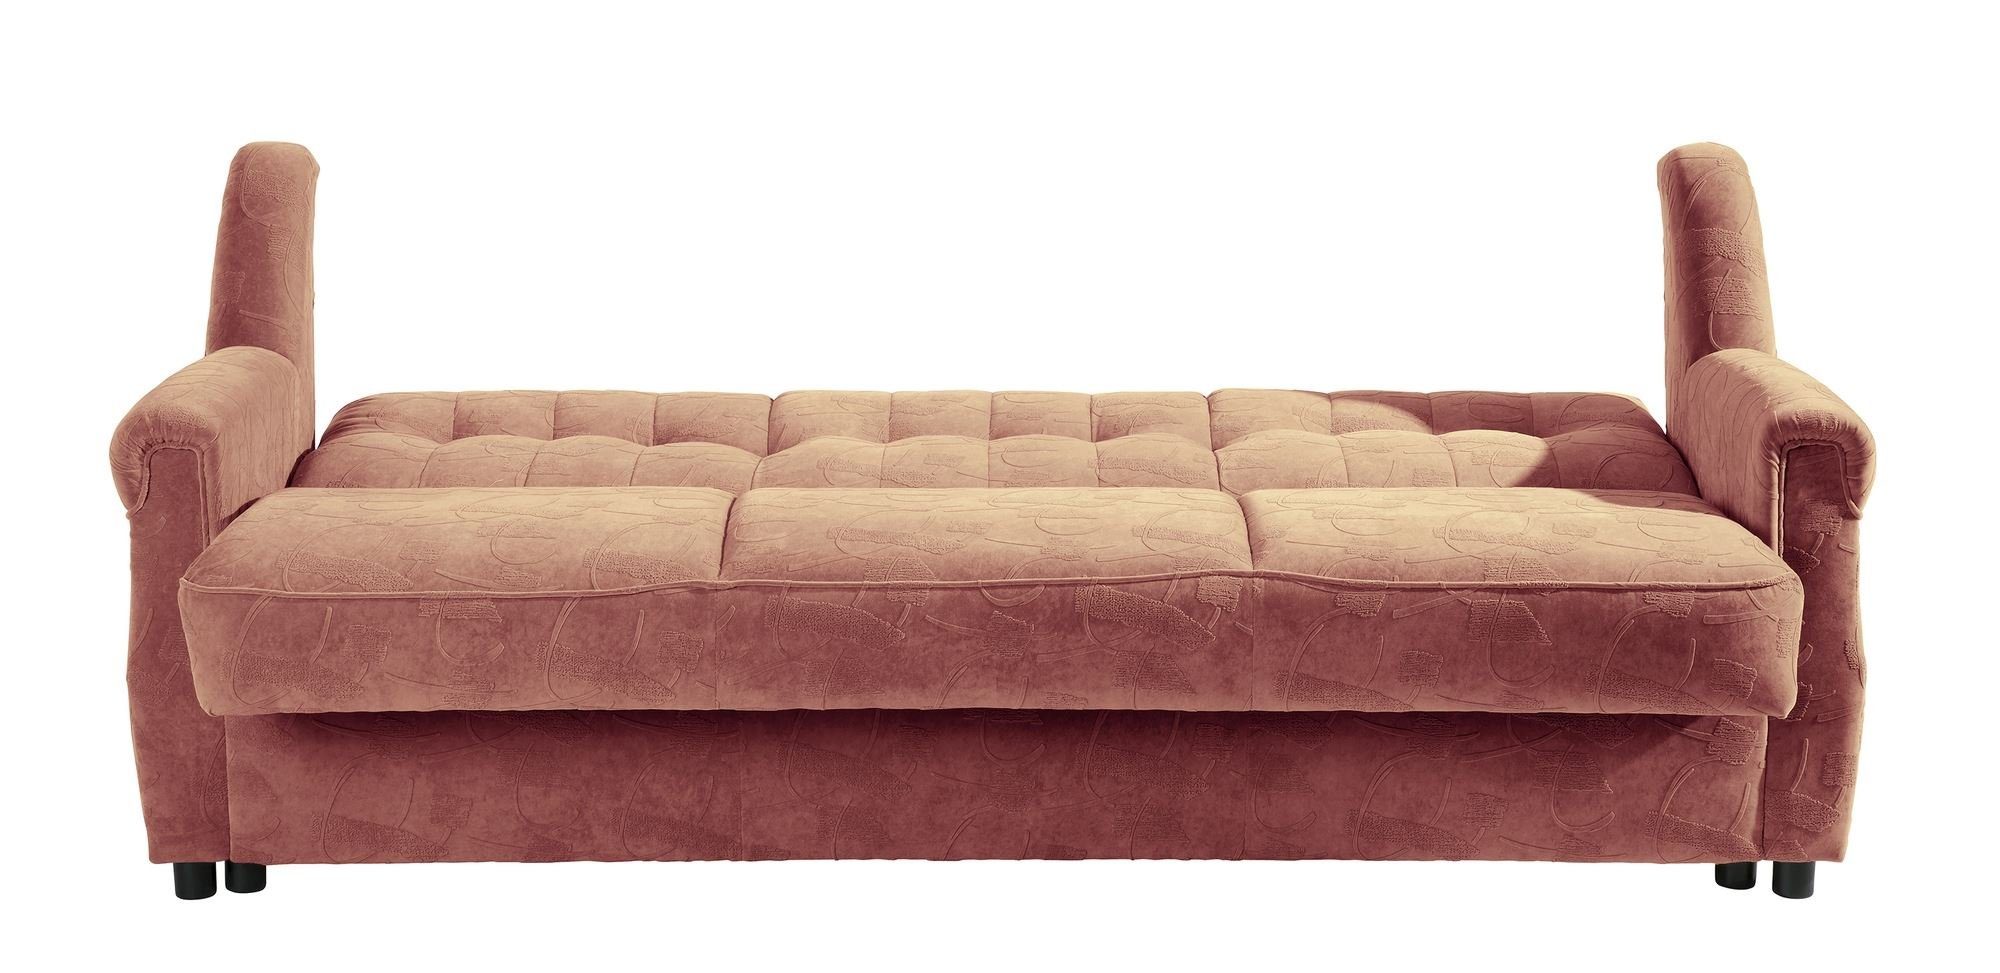 Microf, inkl. Teile, hochwertig 58 Karuna Kessel Bettfunktion Sofa verarbeitet,bequemer aufm Bezug Sitz Sofa Kostenlosem Sparpreis Versand 3-Sitzer 1 mit